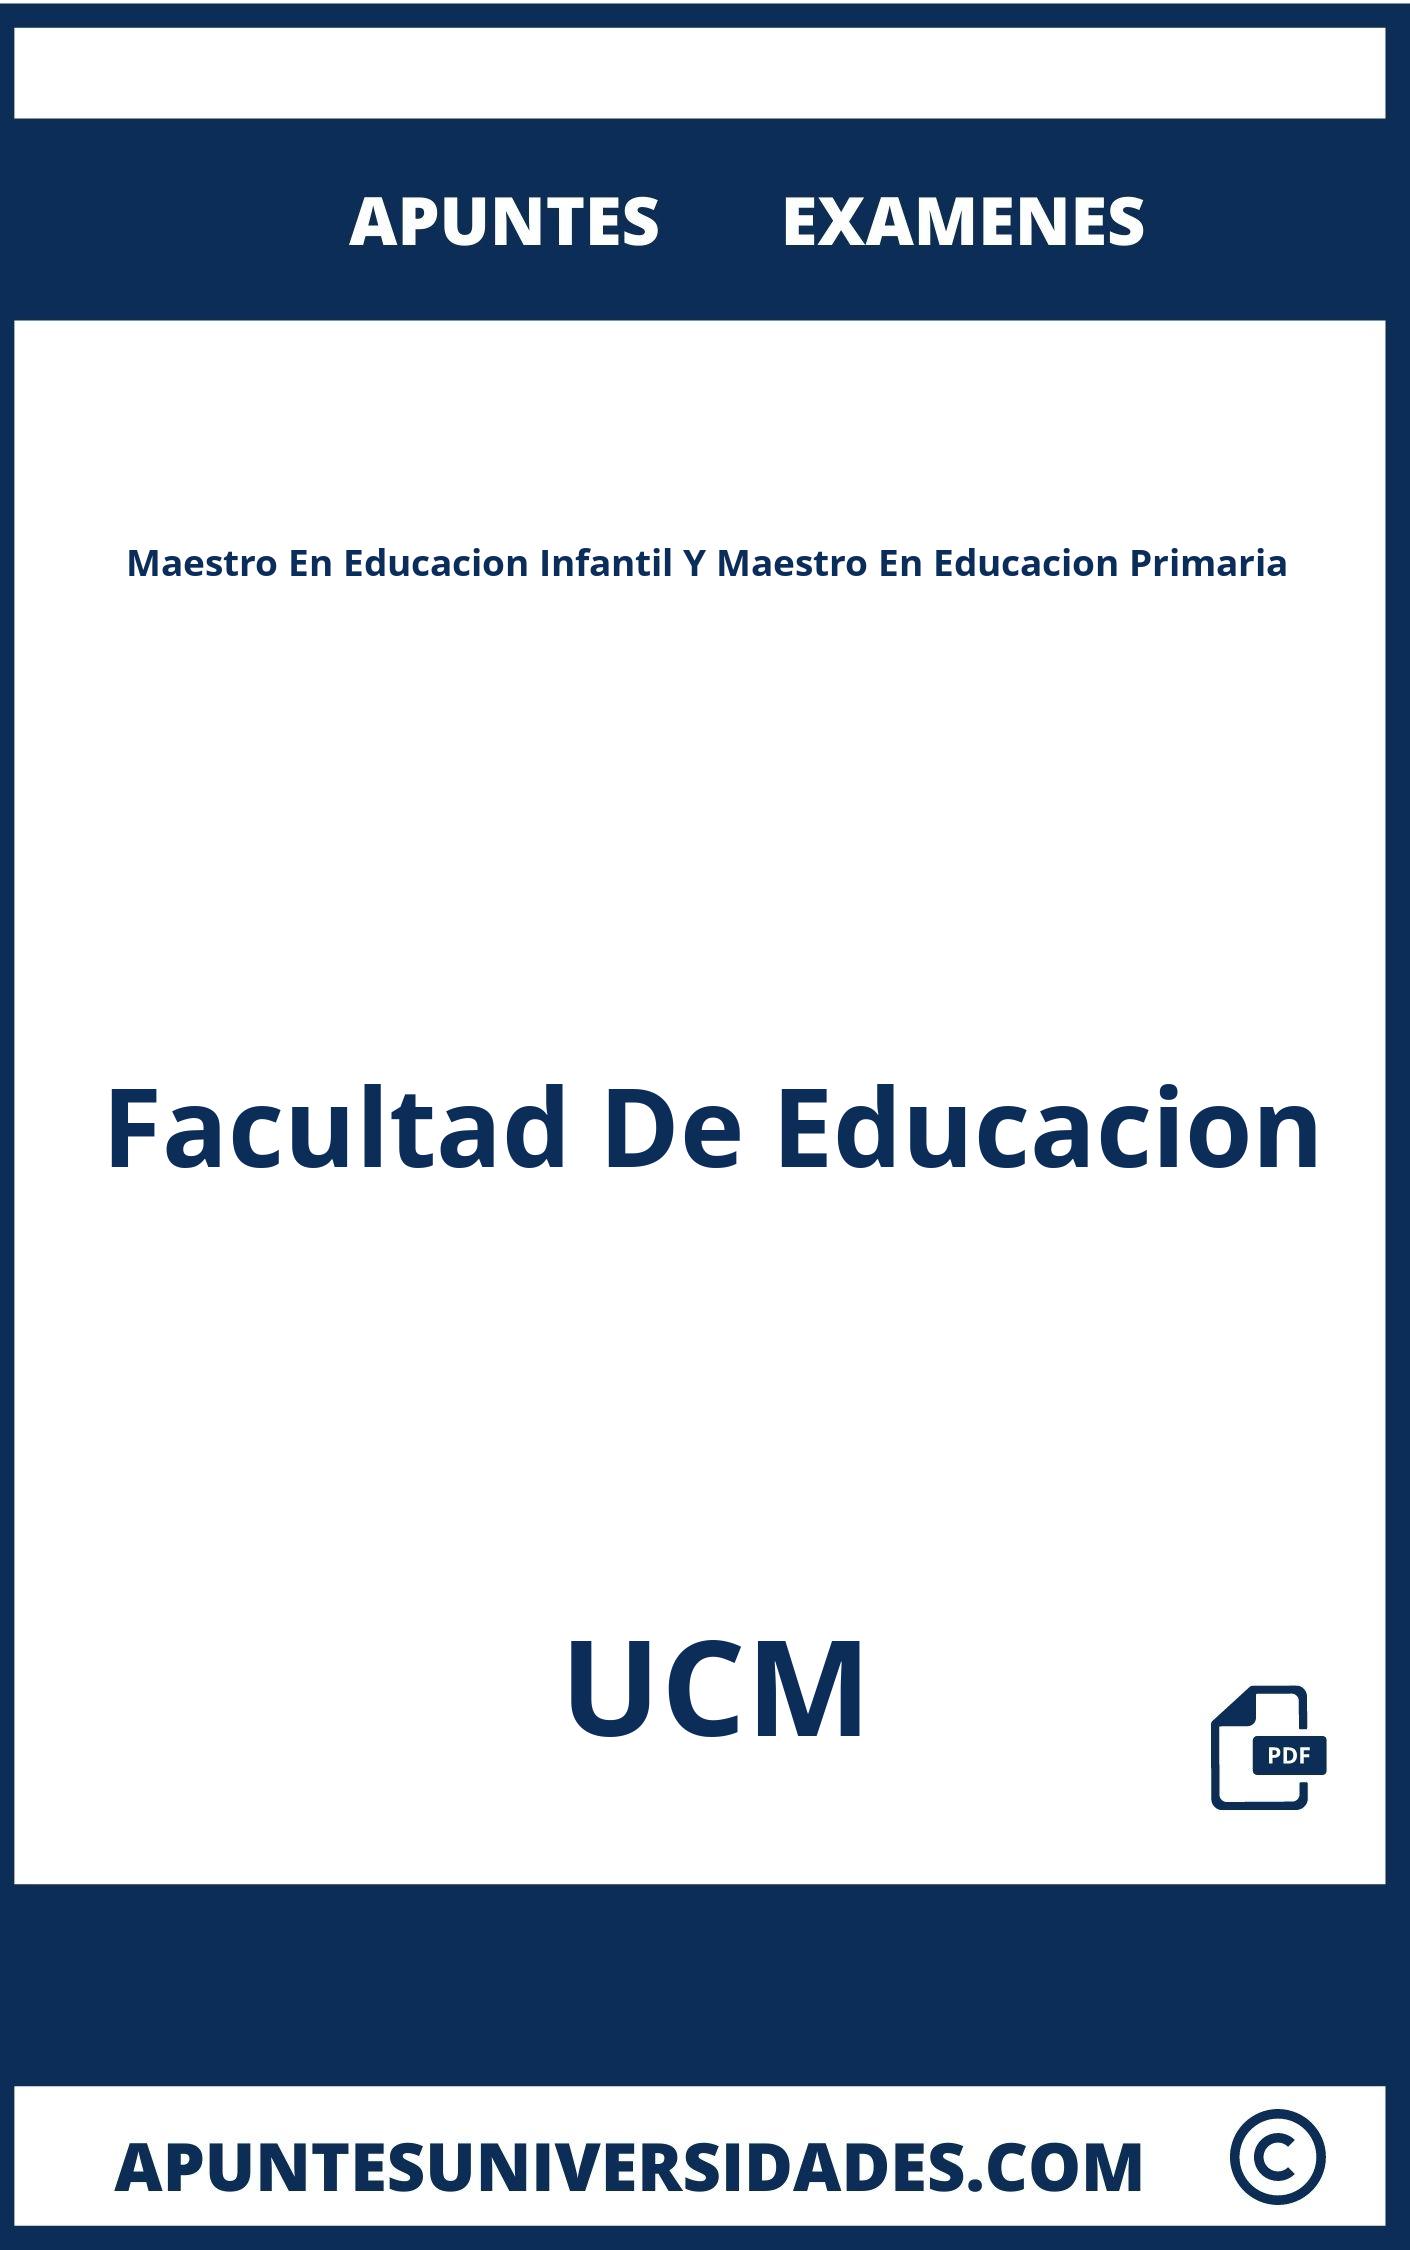 Apuntes Examenes Maestro En Educacion Infantil Y Maestro En Educacion Primaria UCM